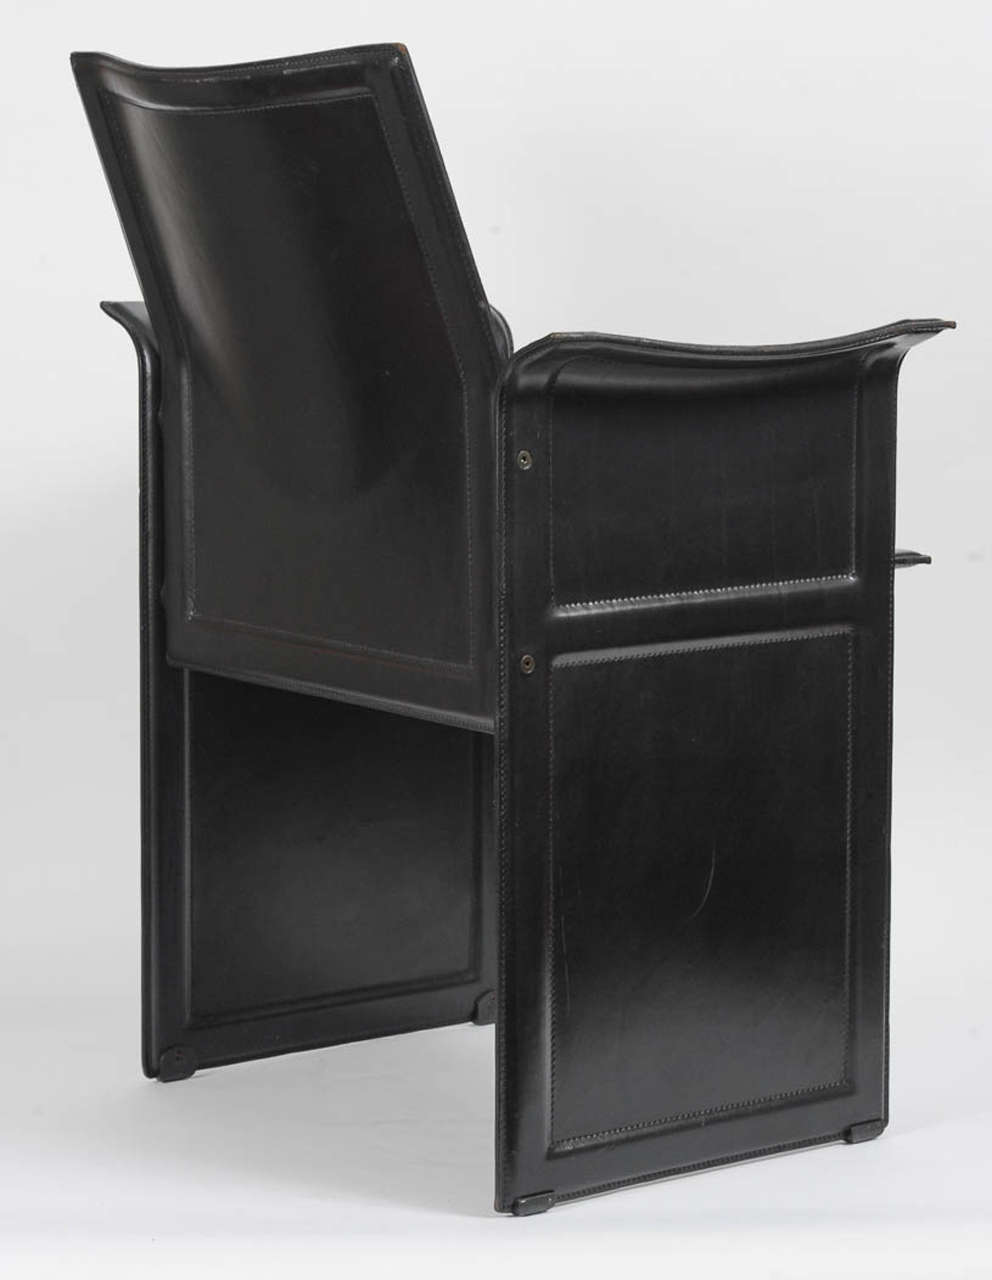 Leather Korium Chair by Tito Agnoli for Mateo Grassi